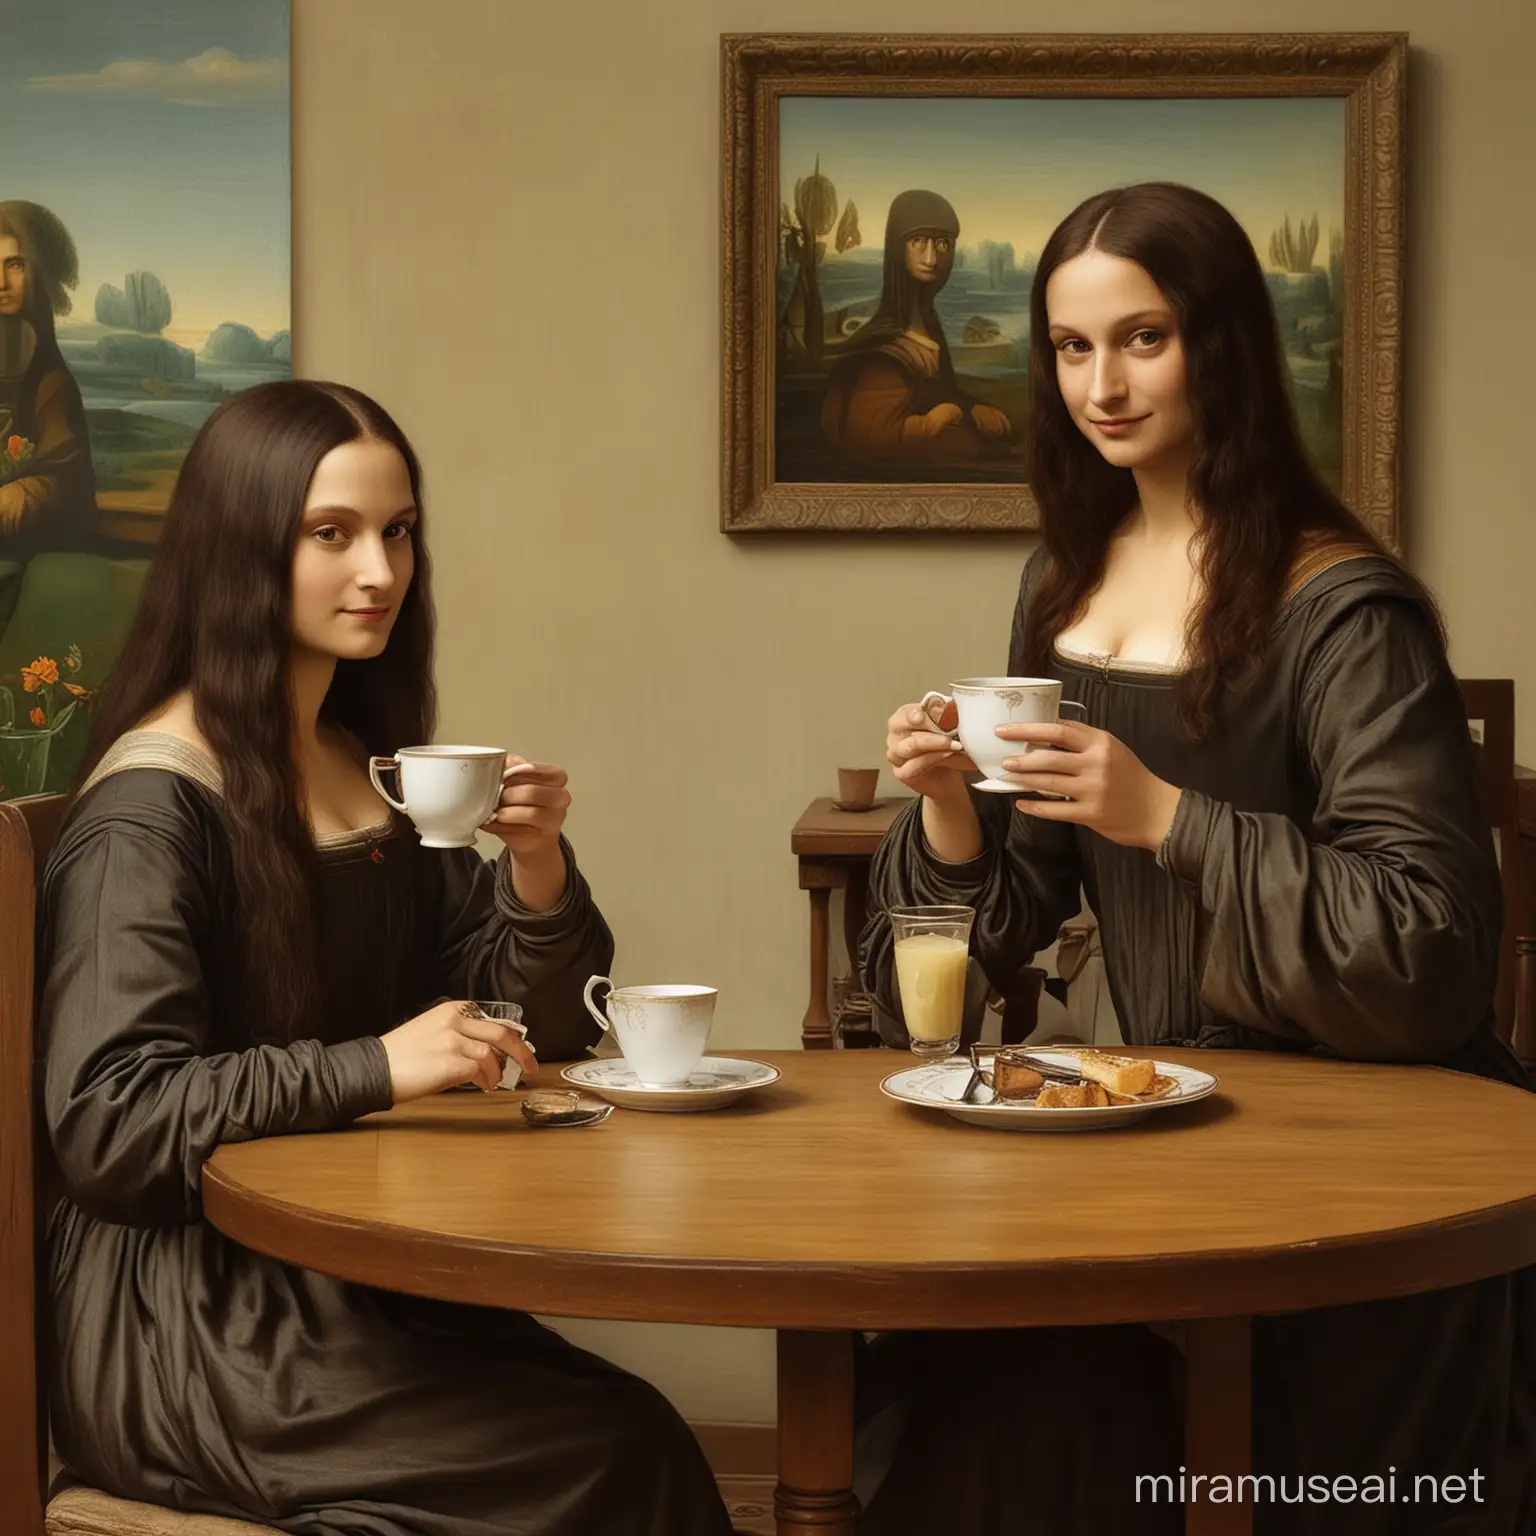 Mona Lisa and Leonardo da Vinci Enjoy a Tea Together on a Table